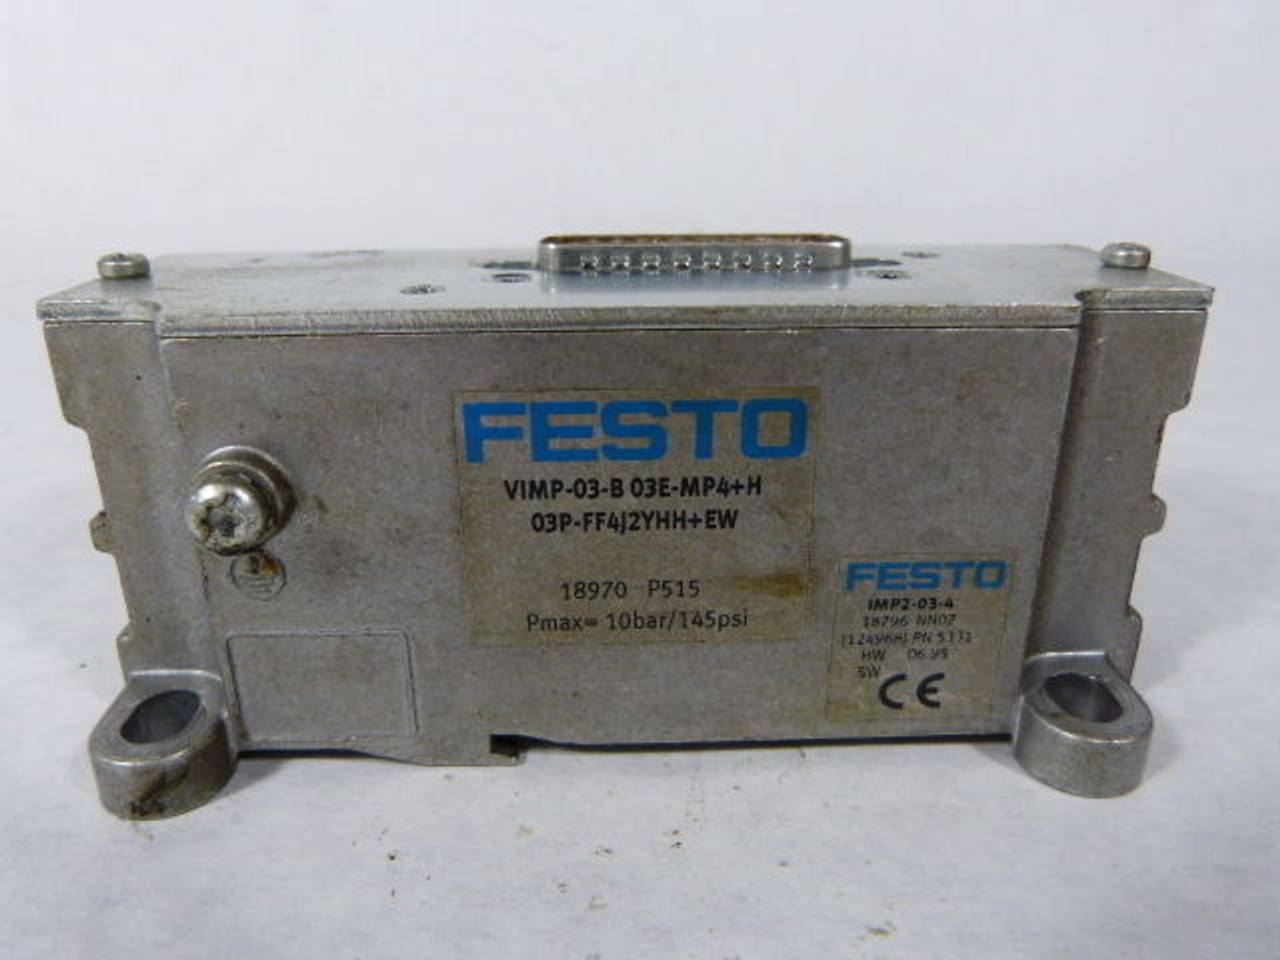 Festo VIMP-03-B03E-MP4??PF4J2YHH? Control Module USED